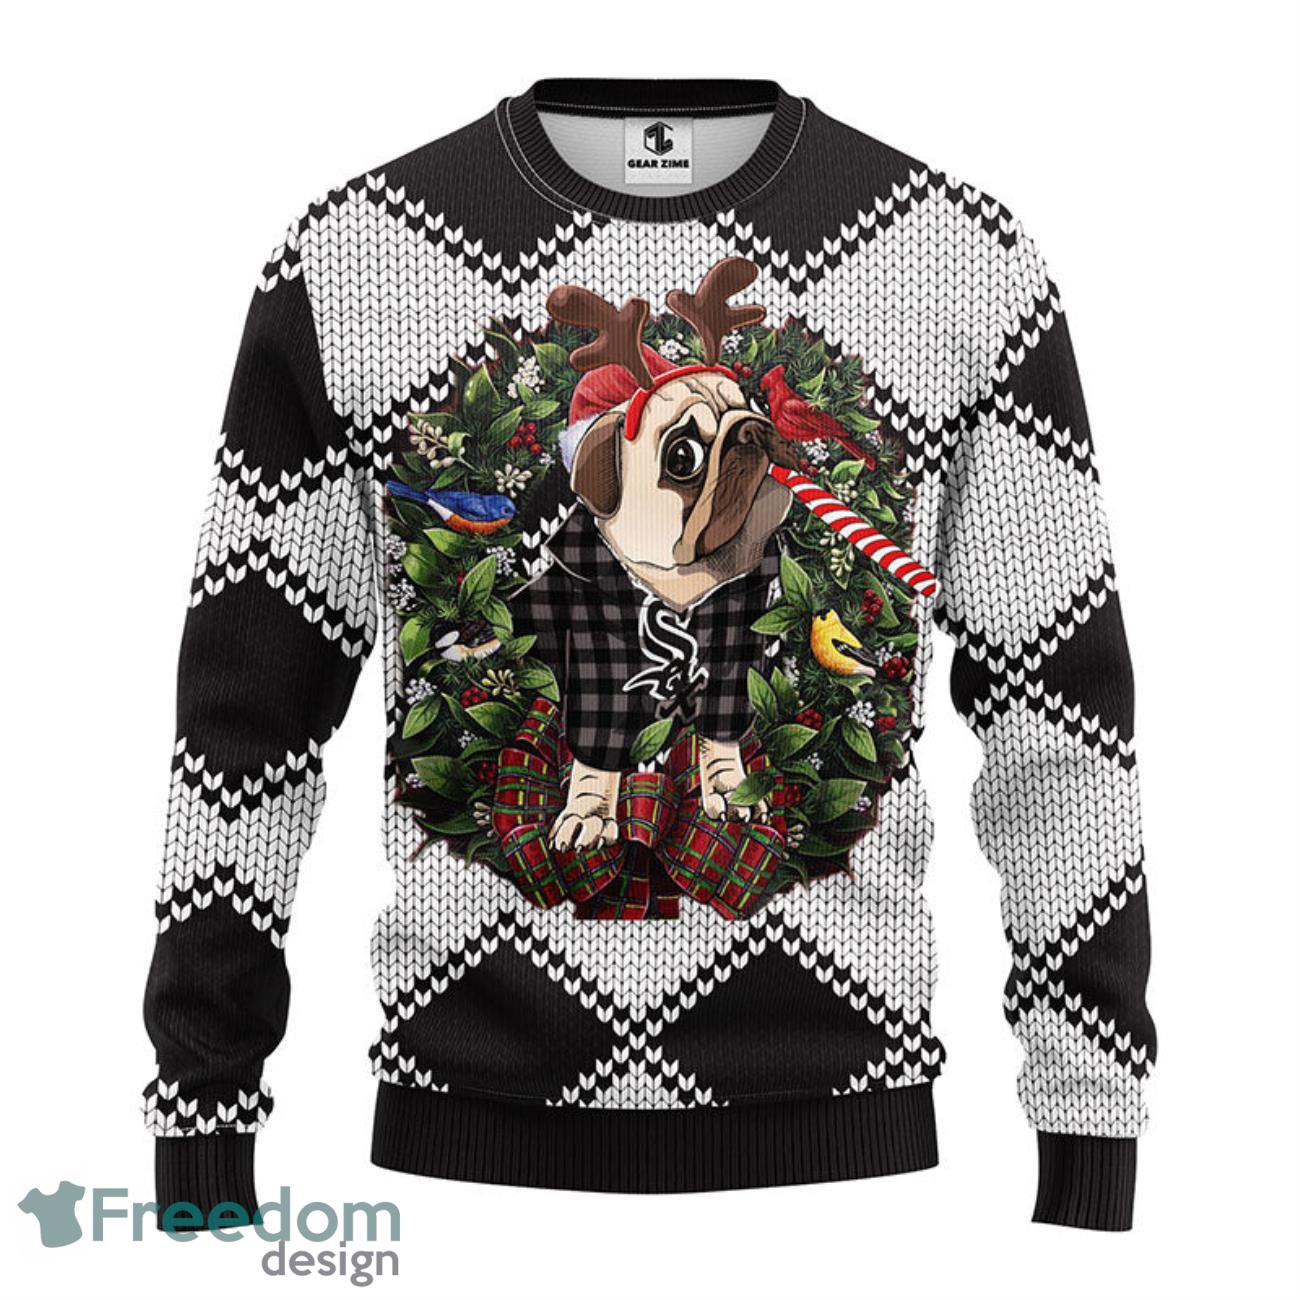 Chicago White Sox Pub Dog Christmas Ugly Sweater - Freedomdesign